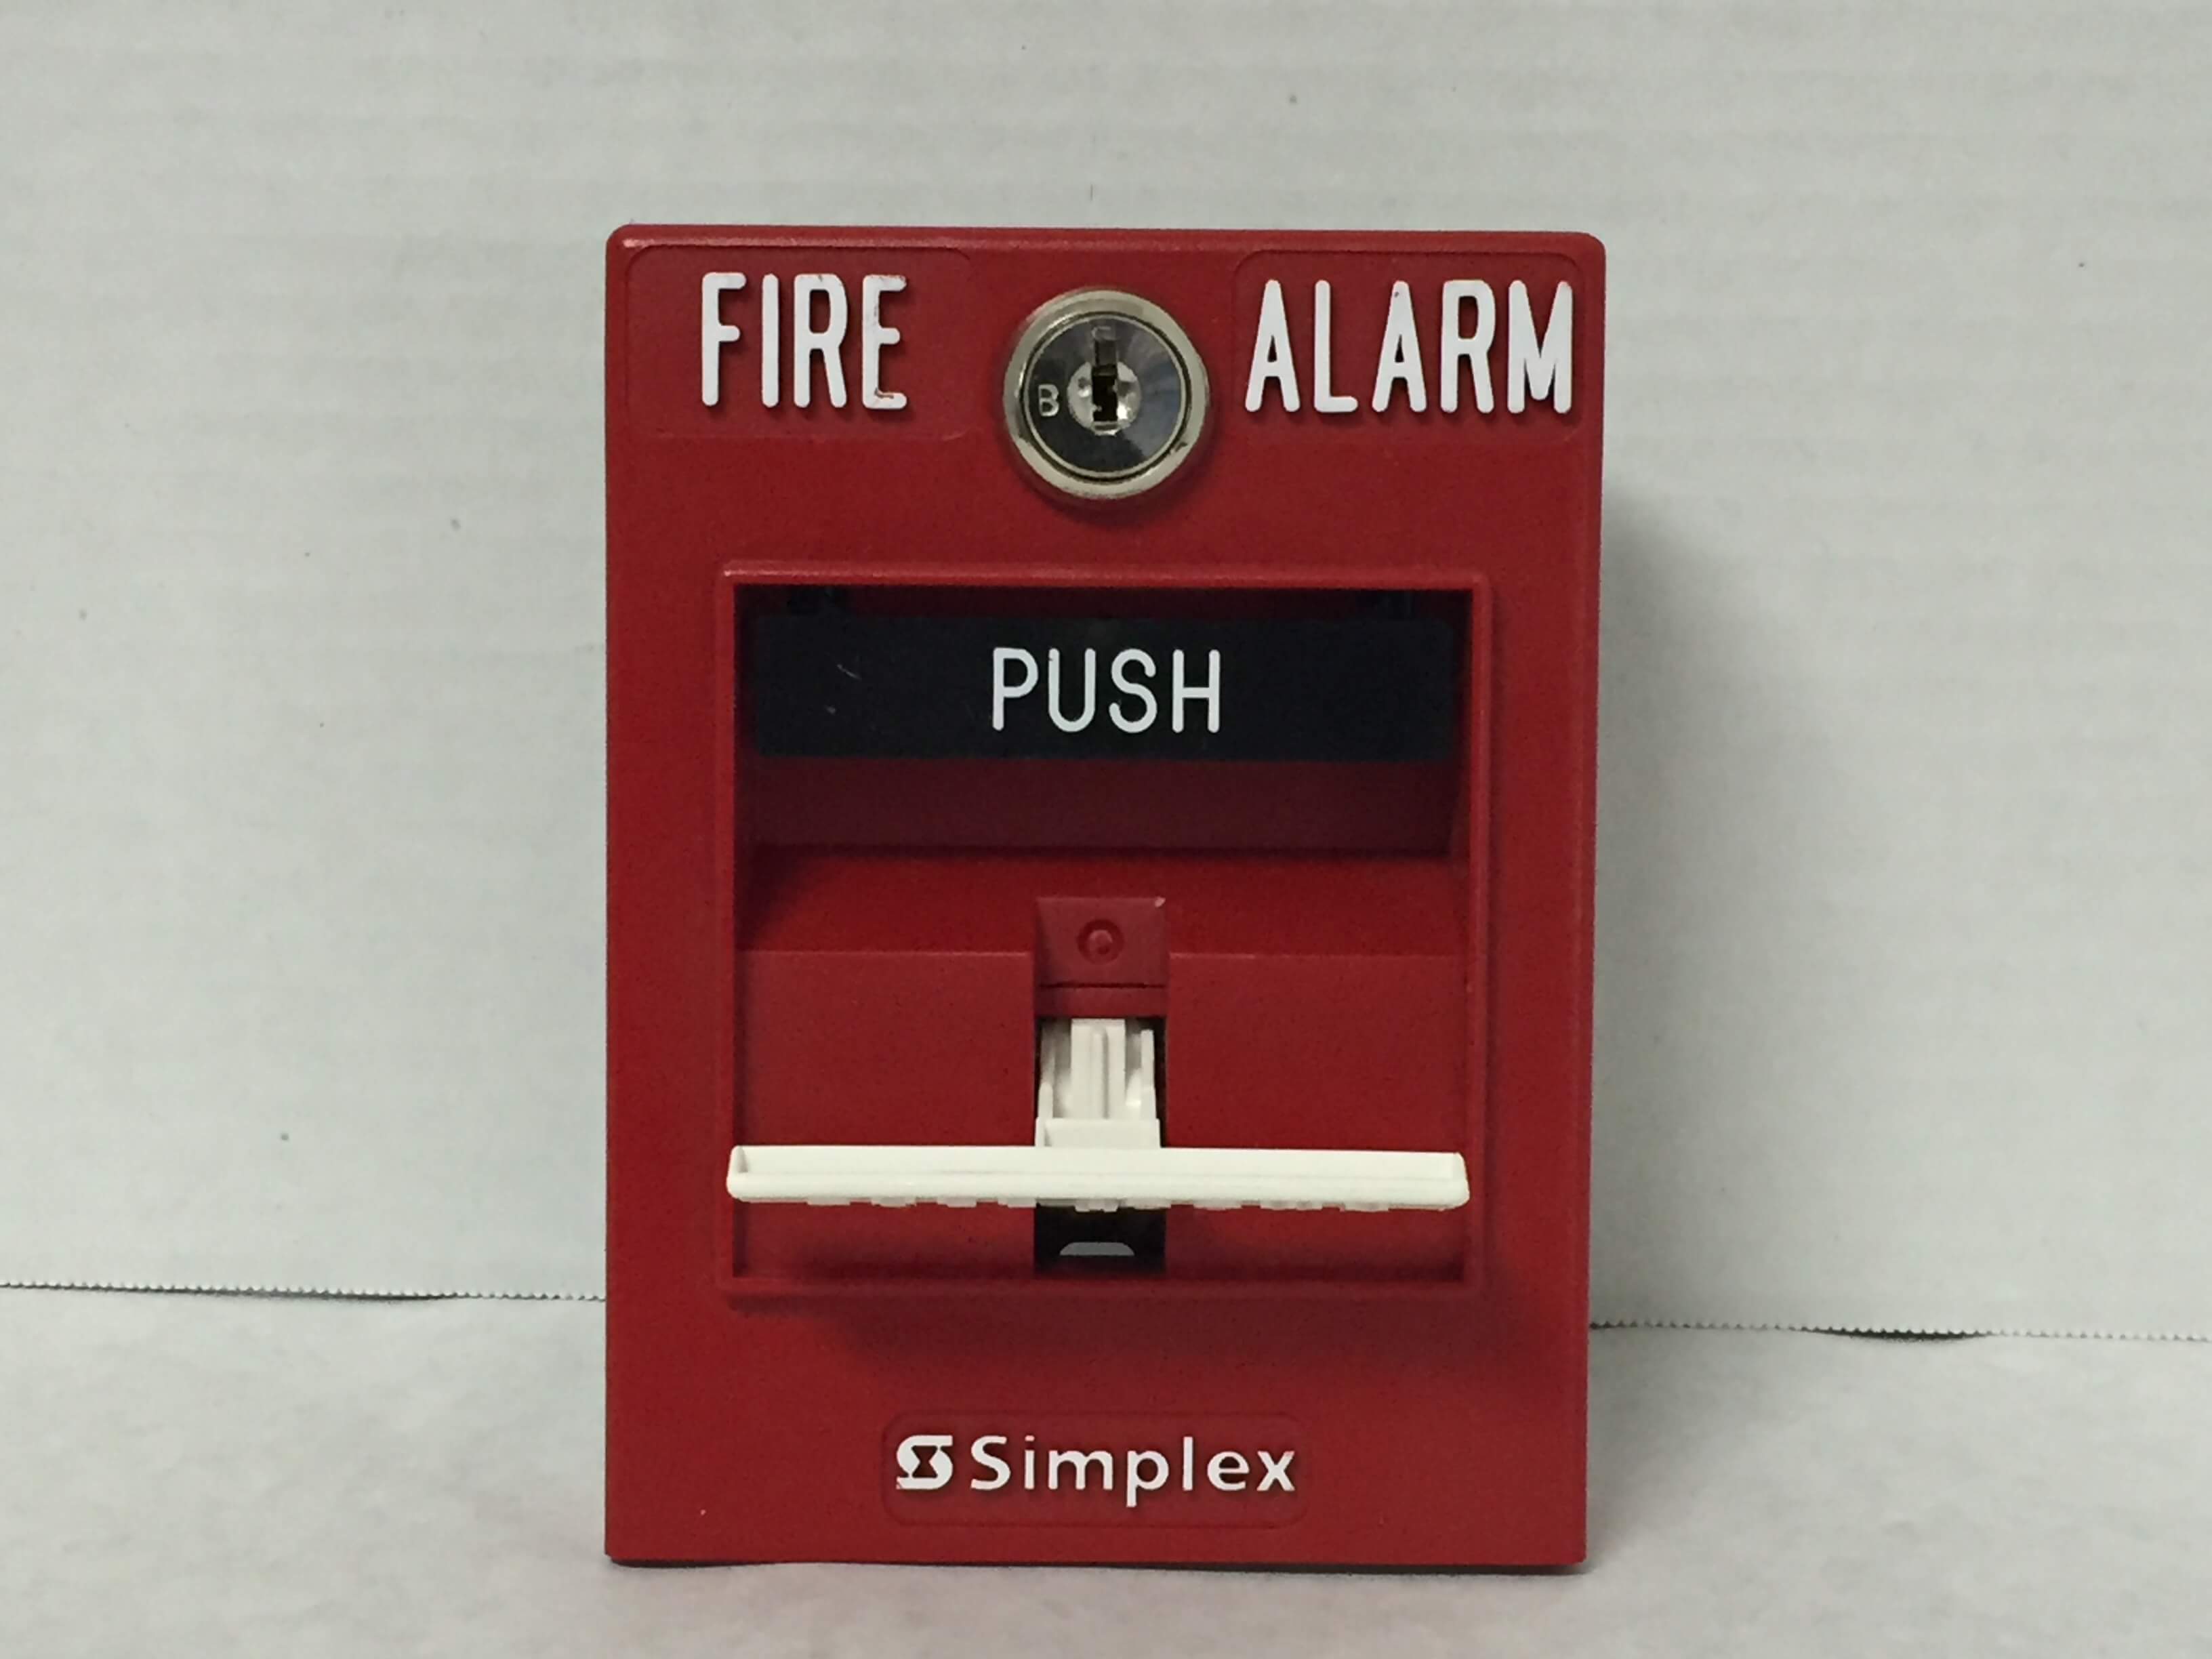 Simplex 4099-9003 - FireAlarms.tv - jjinc24/U8oL0's Fire Alarm ...